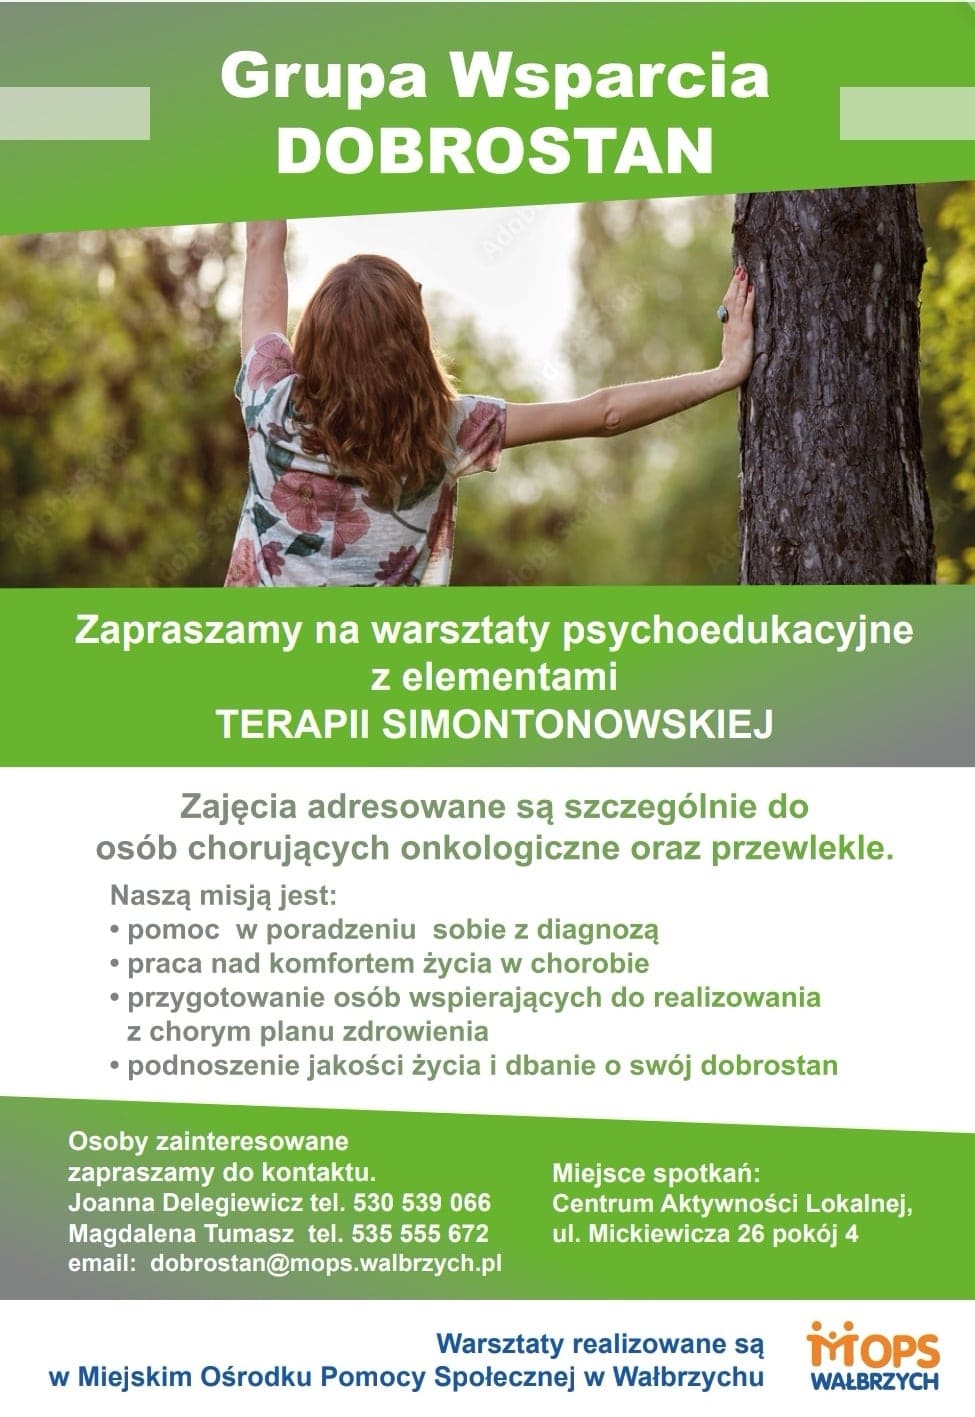 20220602_Dobrostan.jpg „na plakacie w kolorze zielonym kobieta obrócona plecami opiera się o drzewo i informacja o celach grupy wsparcia Dobrostan”